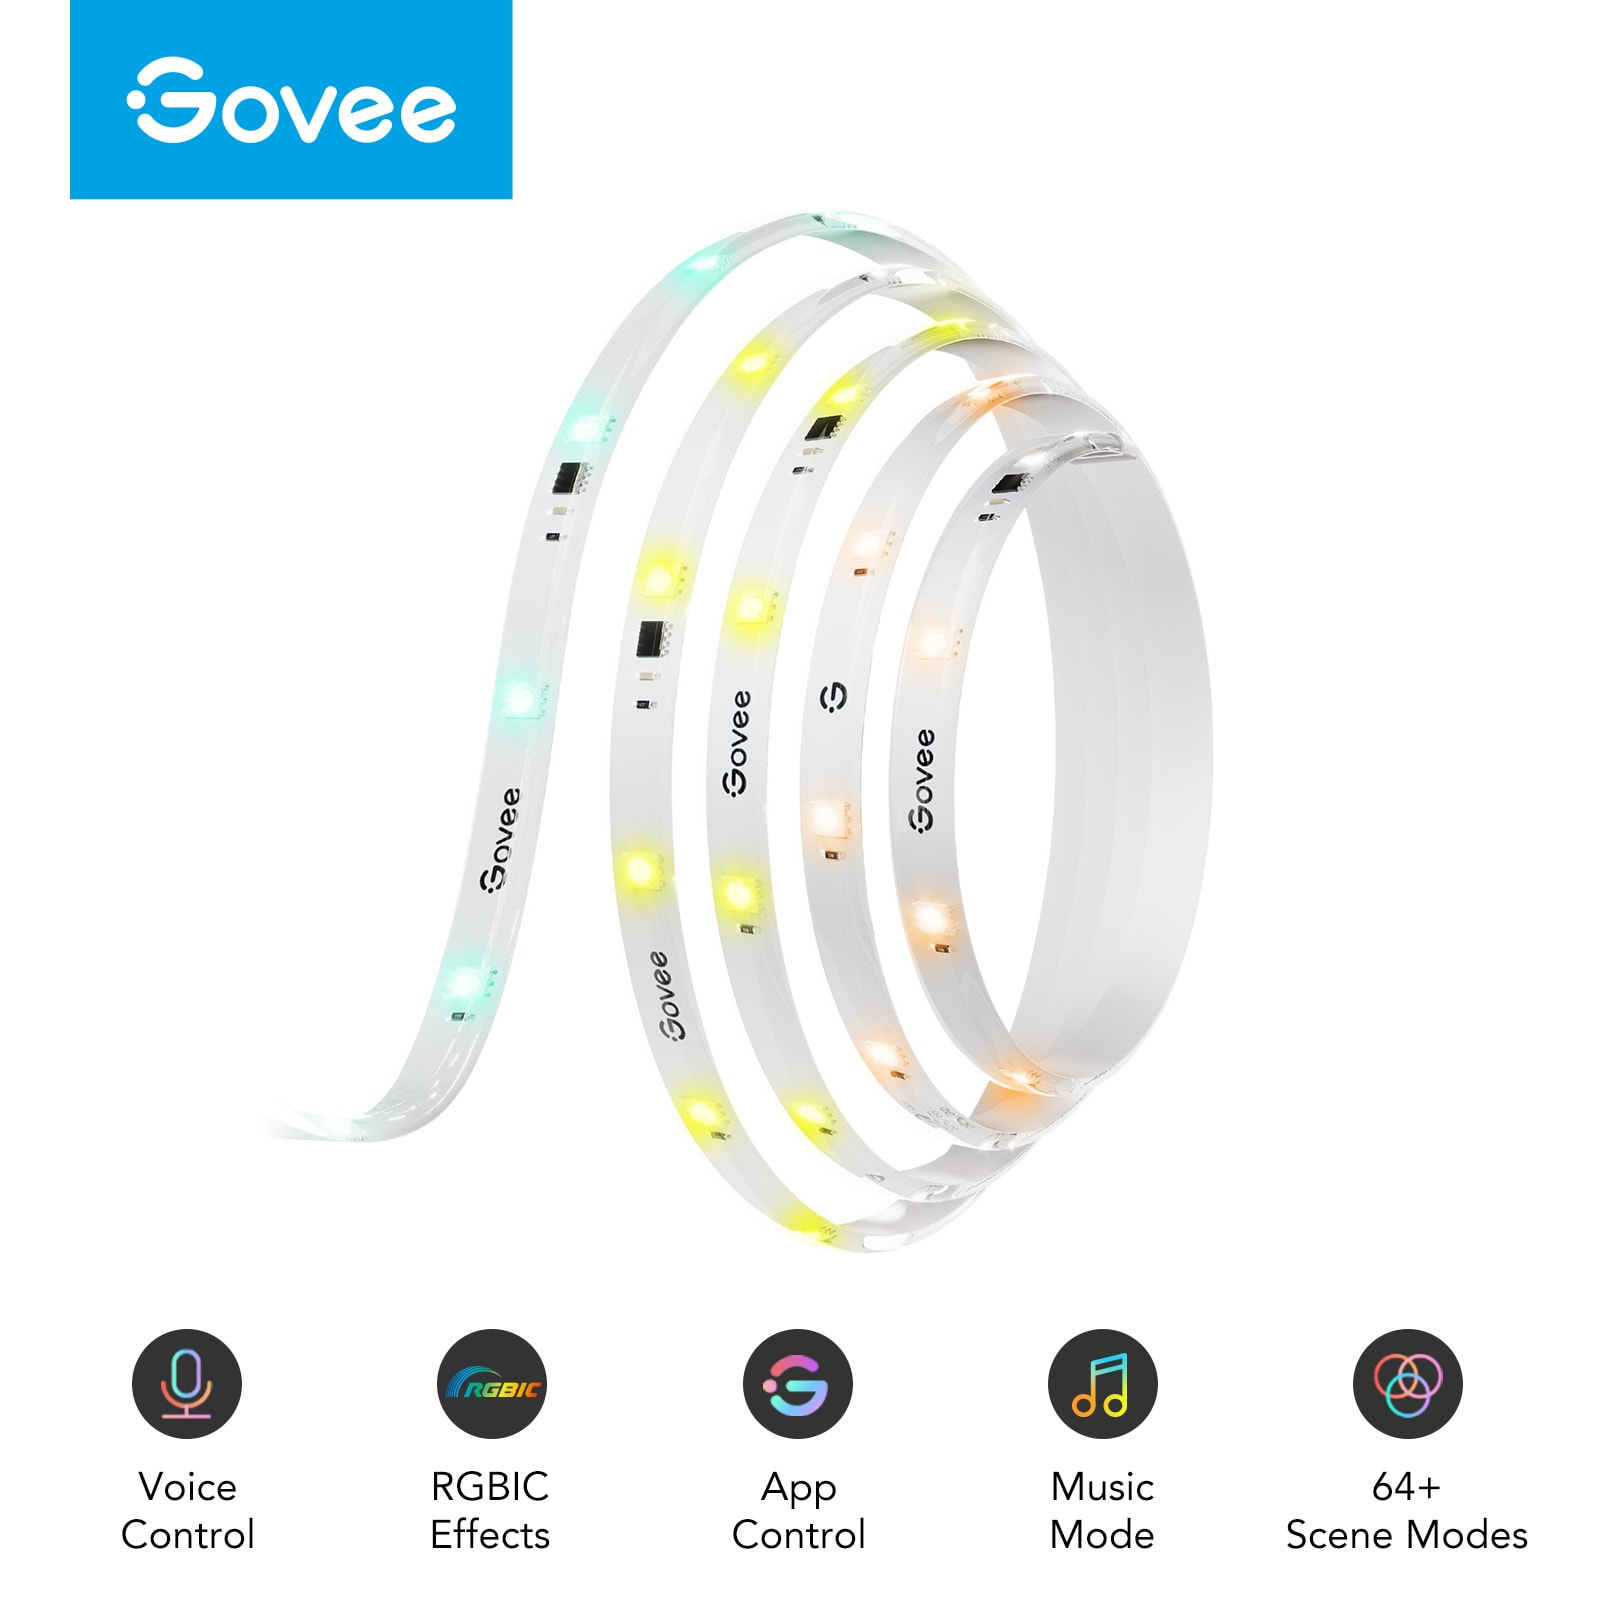 Govee LED Lights Review // Govee RGBIC LED Strip Lights WiFi Alexa